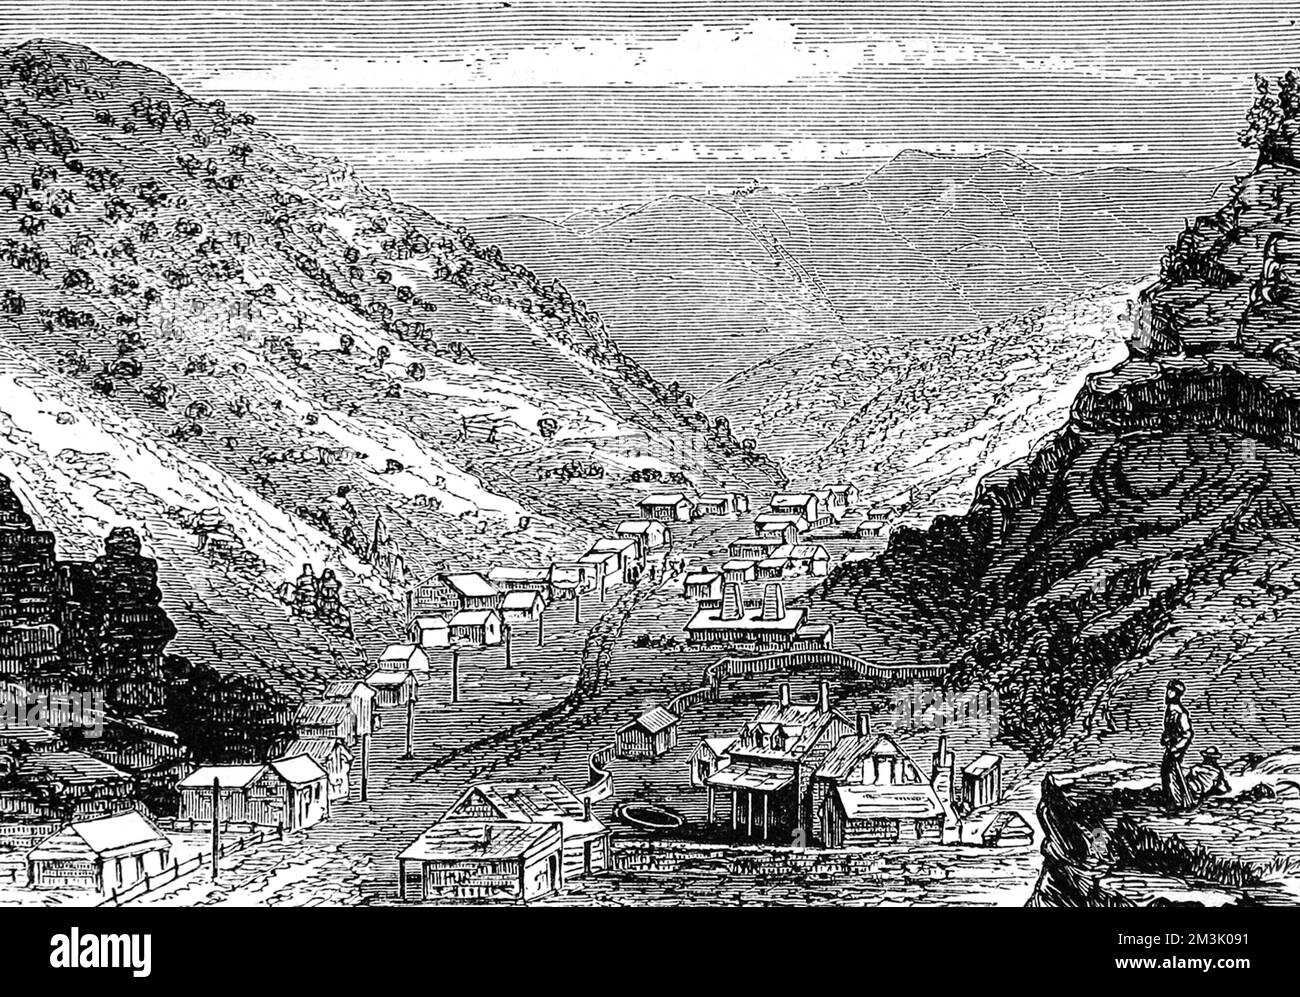 Paysage des Rocheuses dans l'Utah, montrant des maisons récemment construites avec des cadres en bois. Date: 1874 Banque D'Images